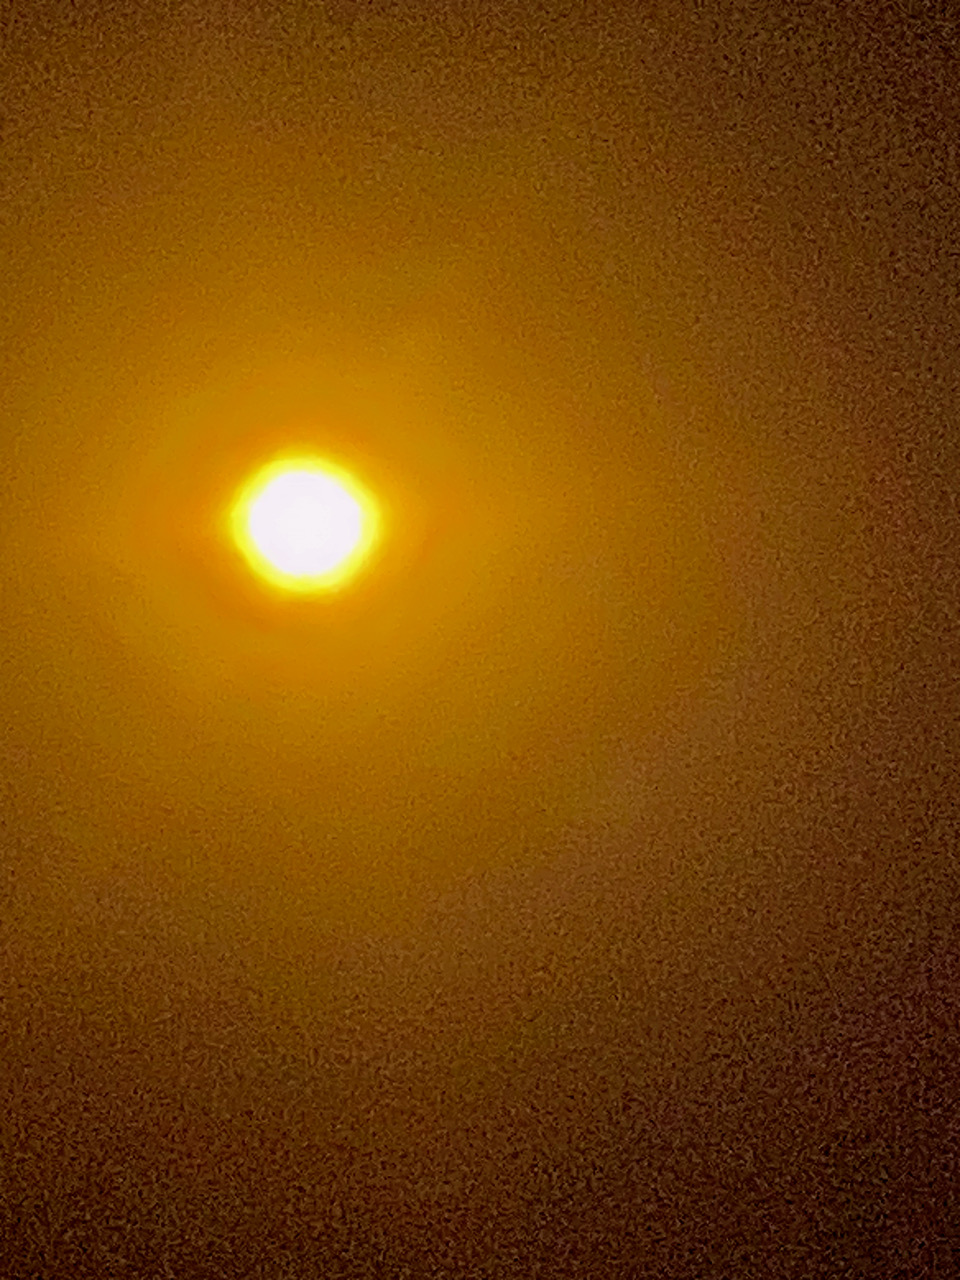 Imagen más grande del Sol en foto